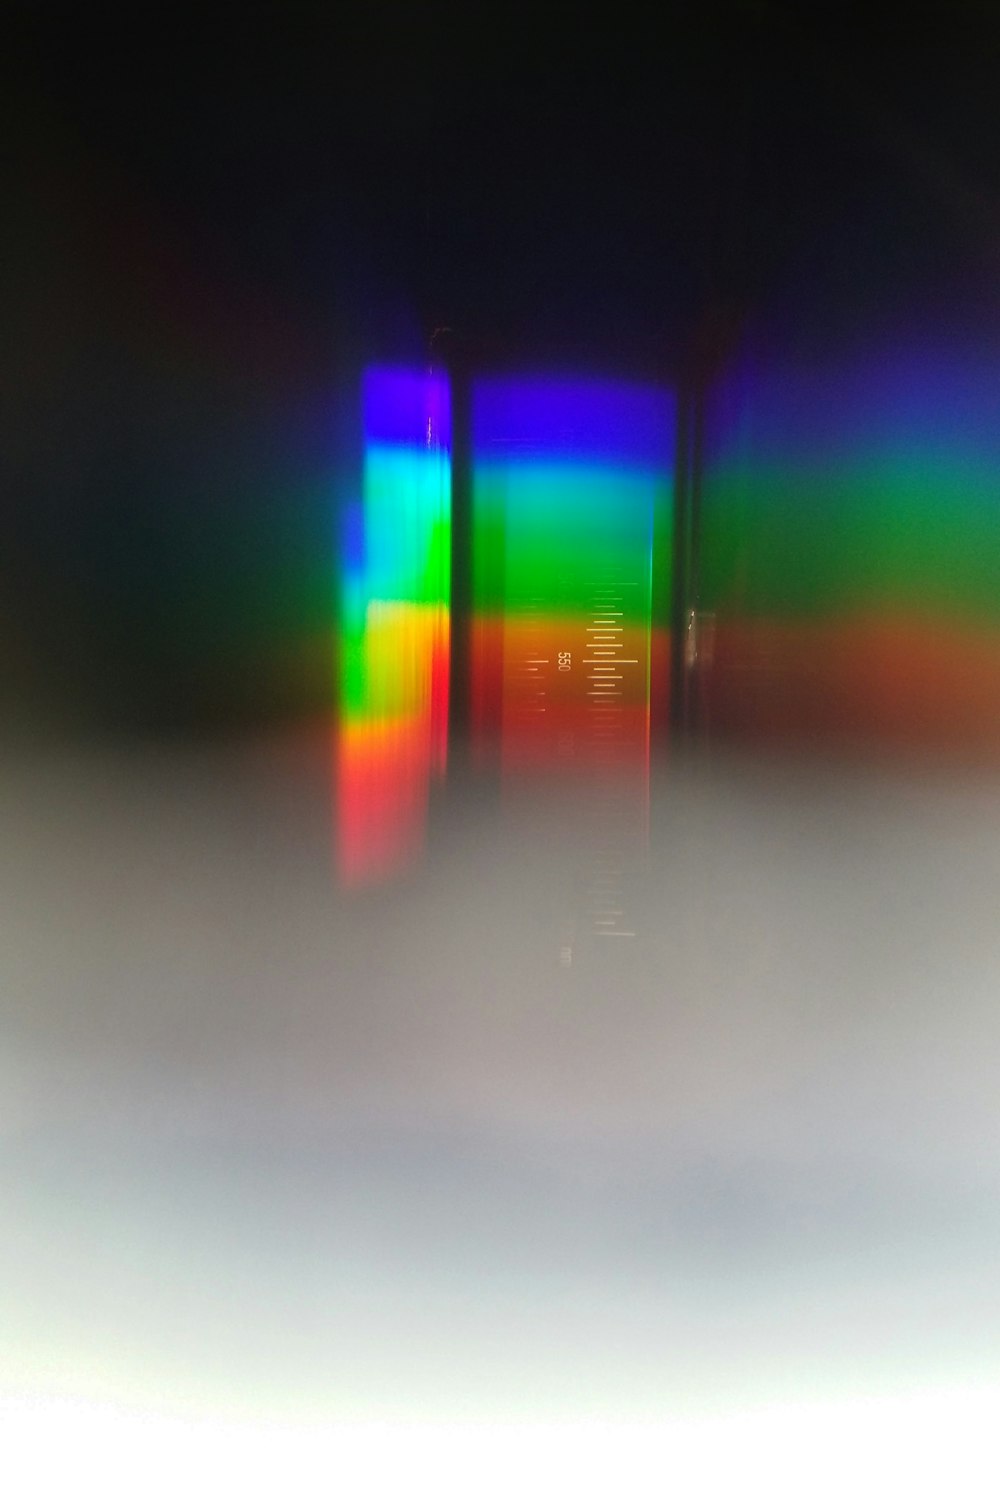 uma foto desfocada de um telefone celular com uma tela colorida